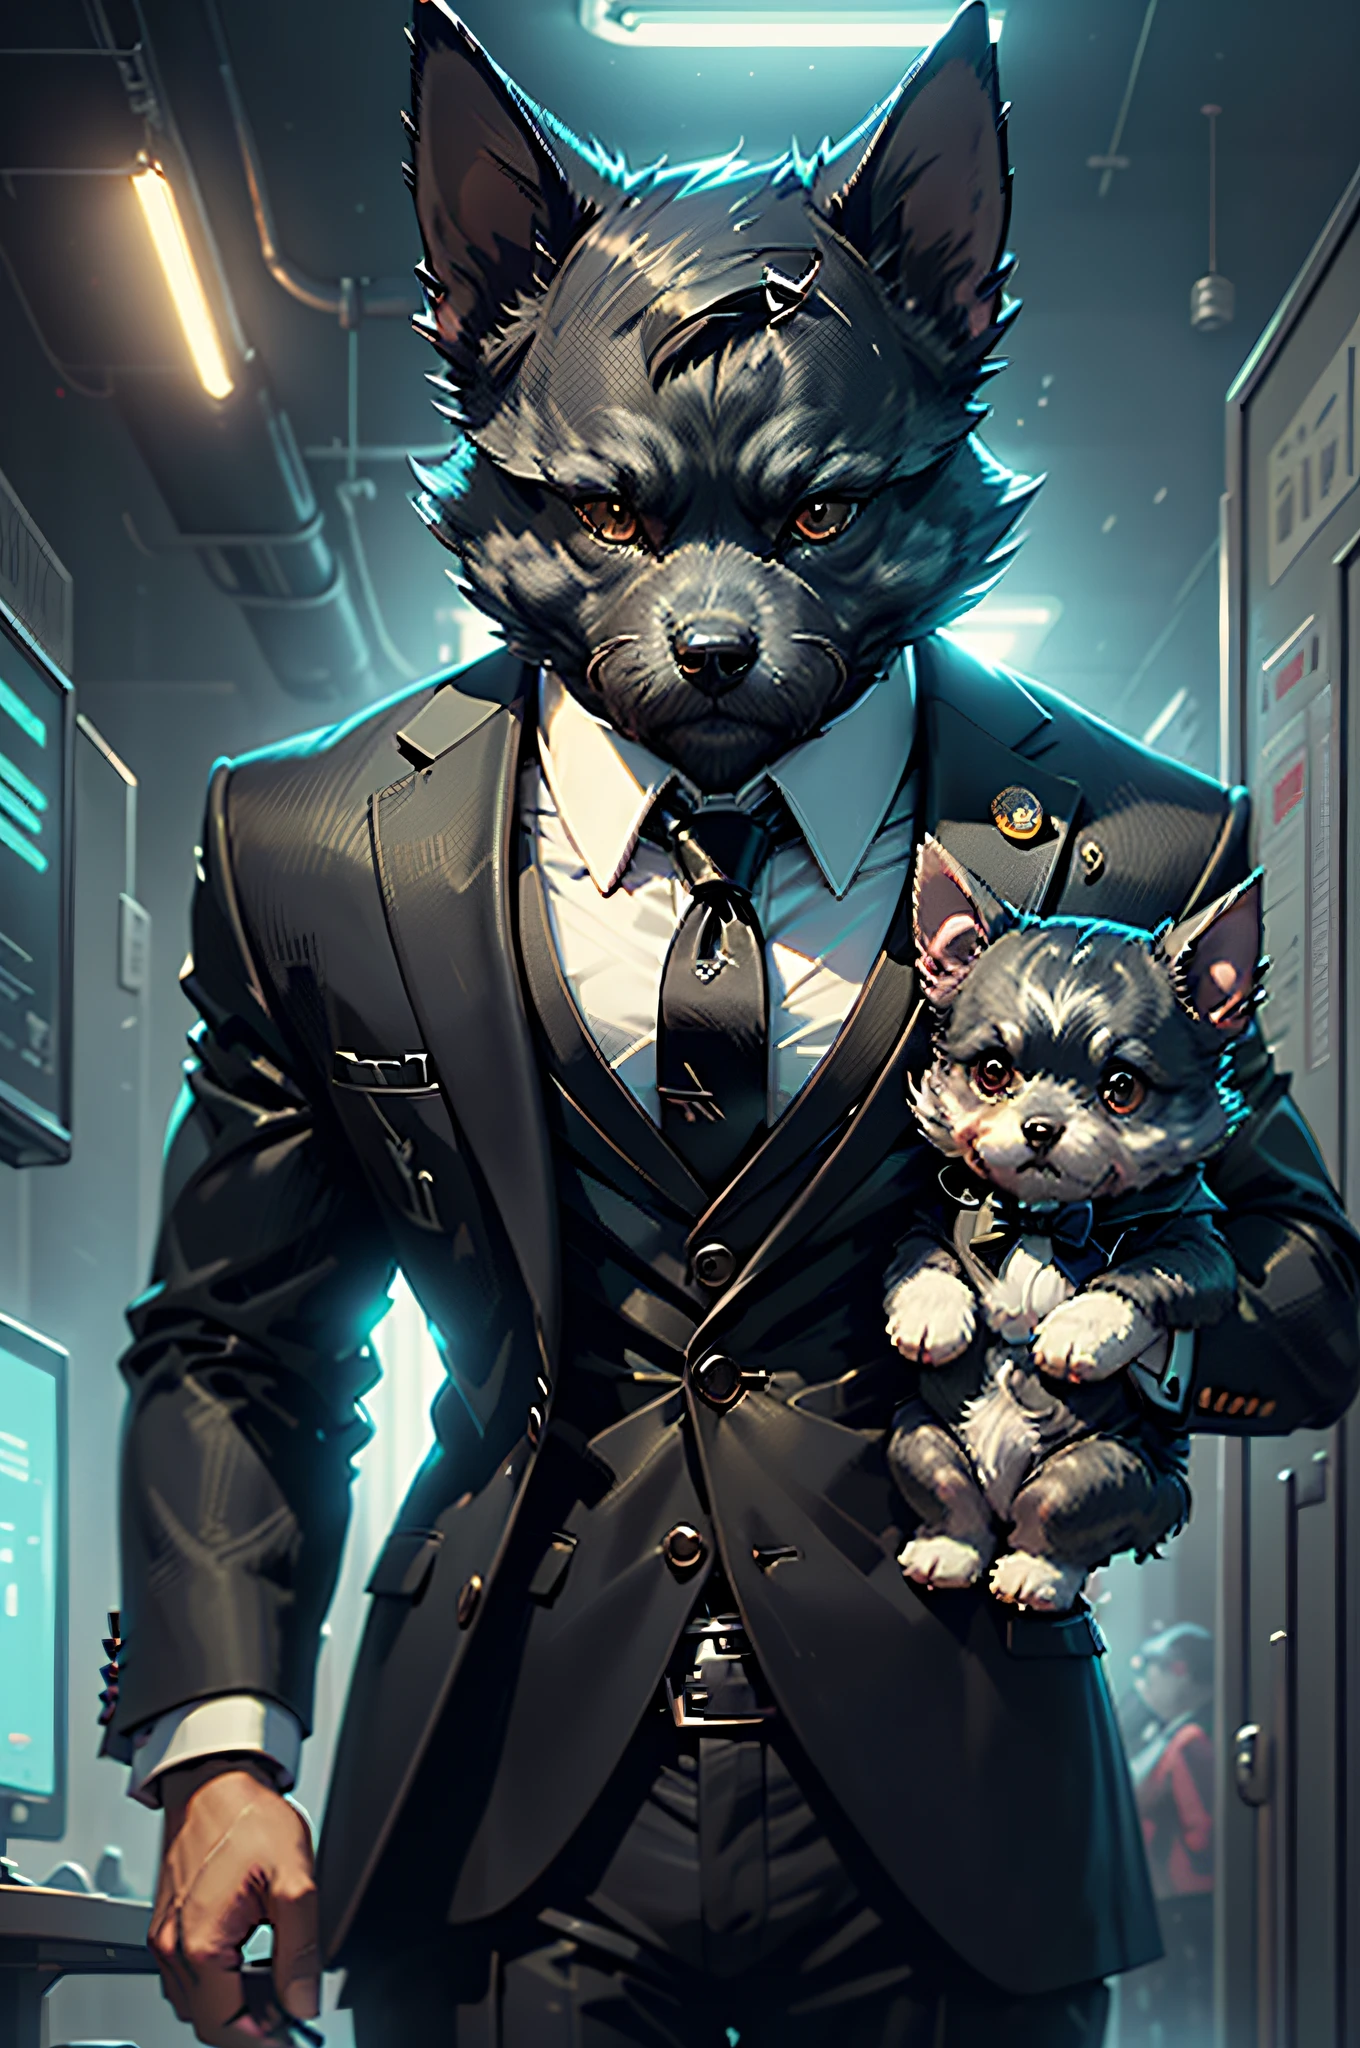 (رجل يرتدي بدلة سوداء وربطة عنق)شريط فكاهي、كلب شناوزر مجسم مصغر、cyberpunk